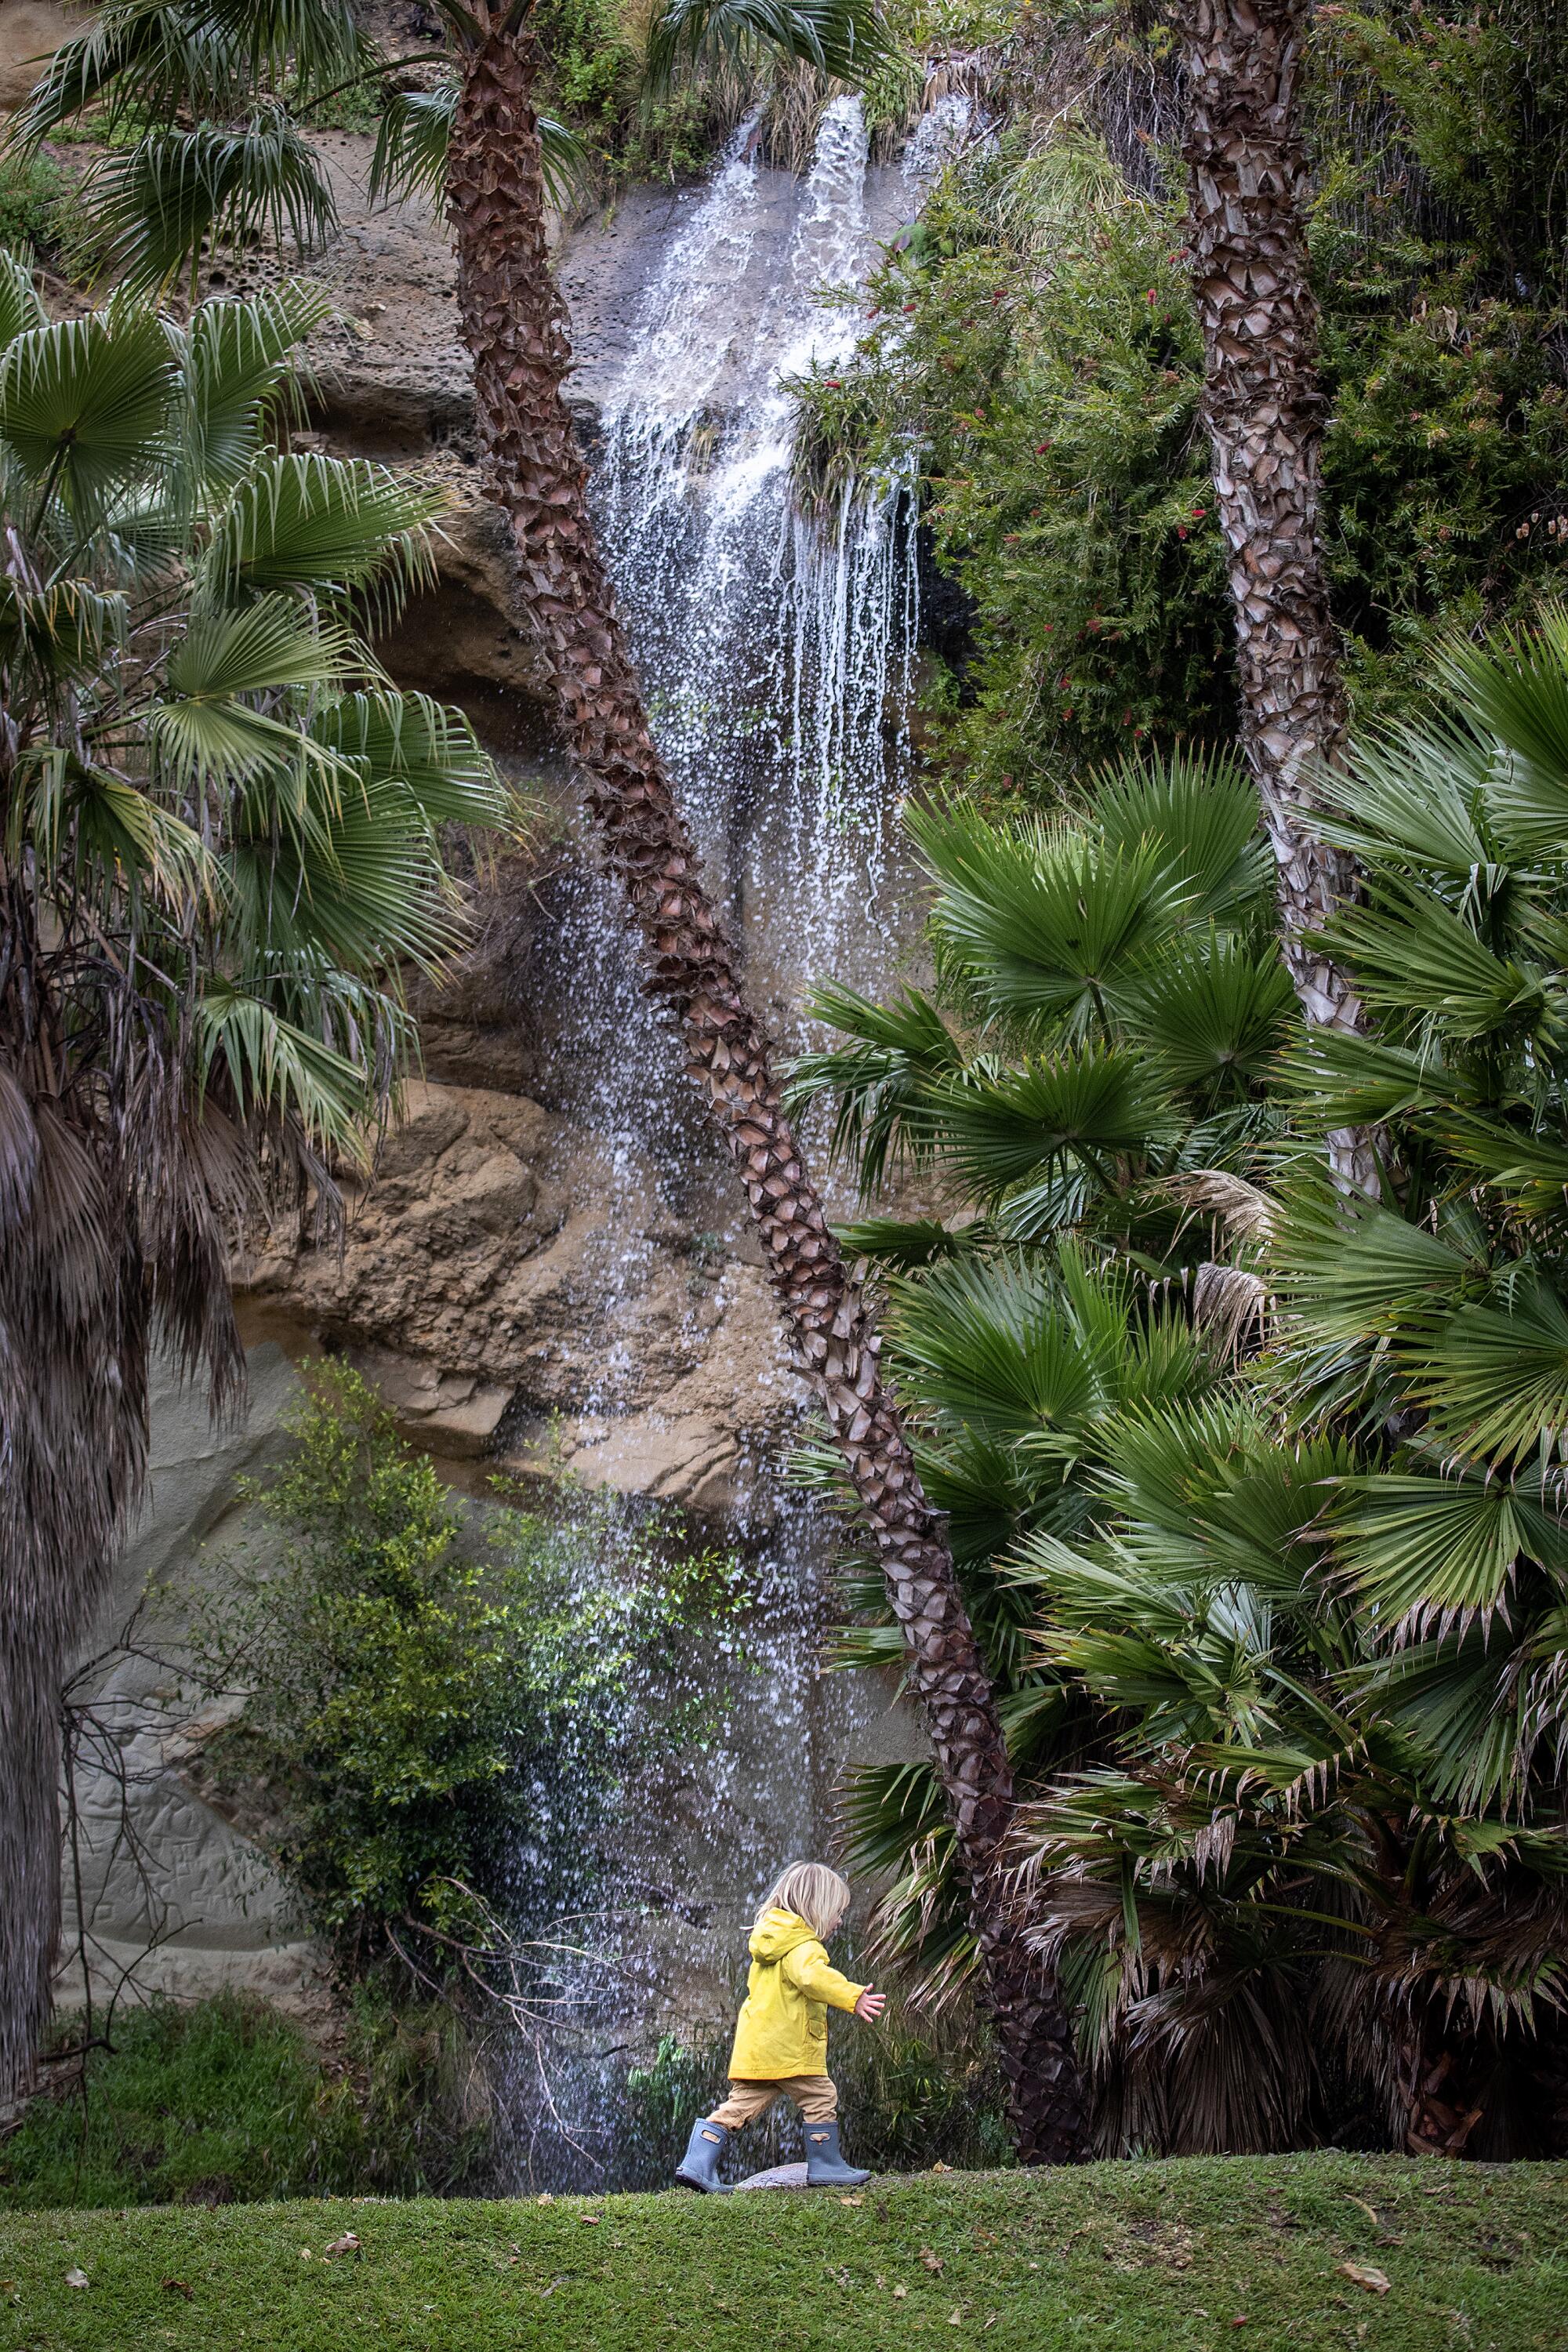 黄色いレインコートを着た子供が小さな滝の下を歩いています。 